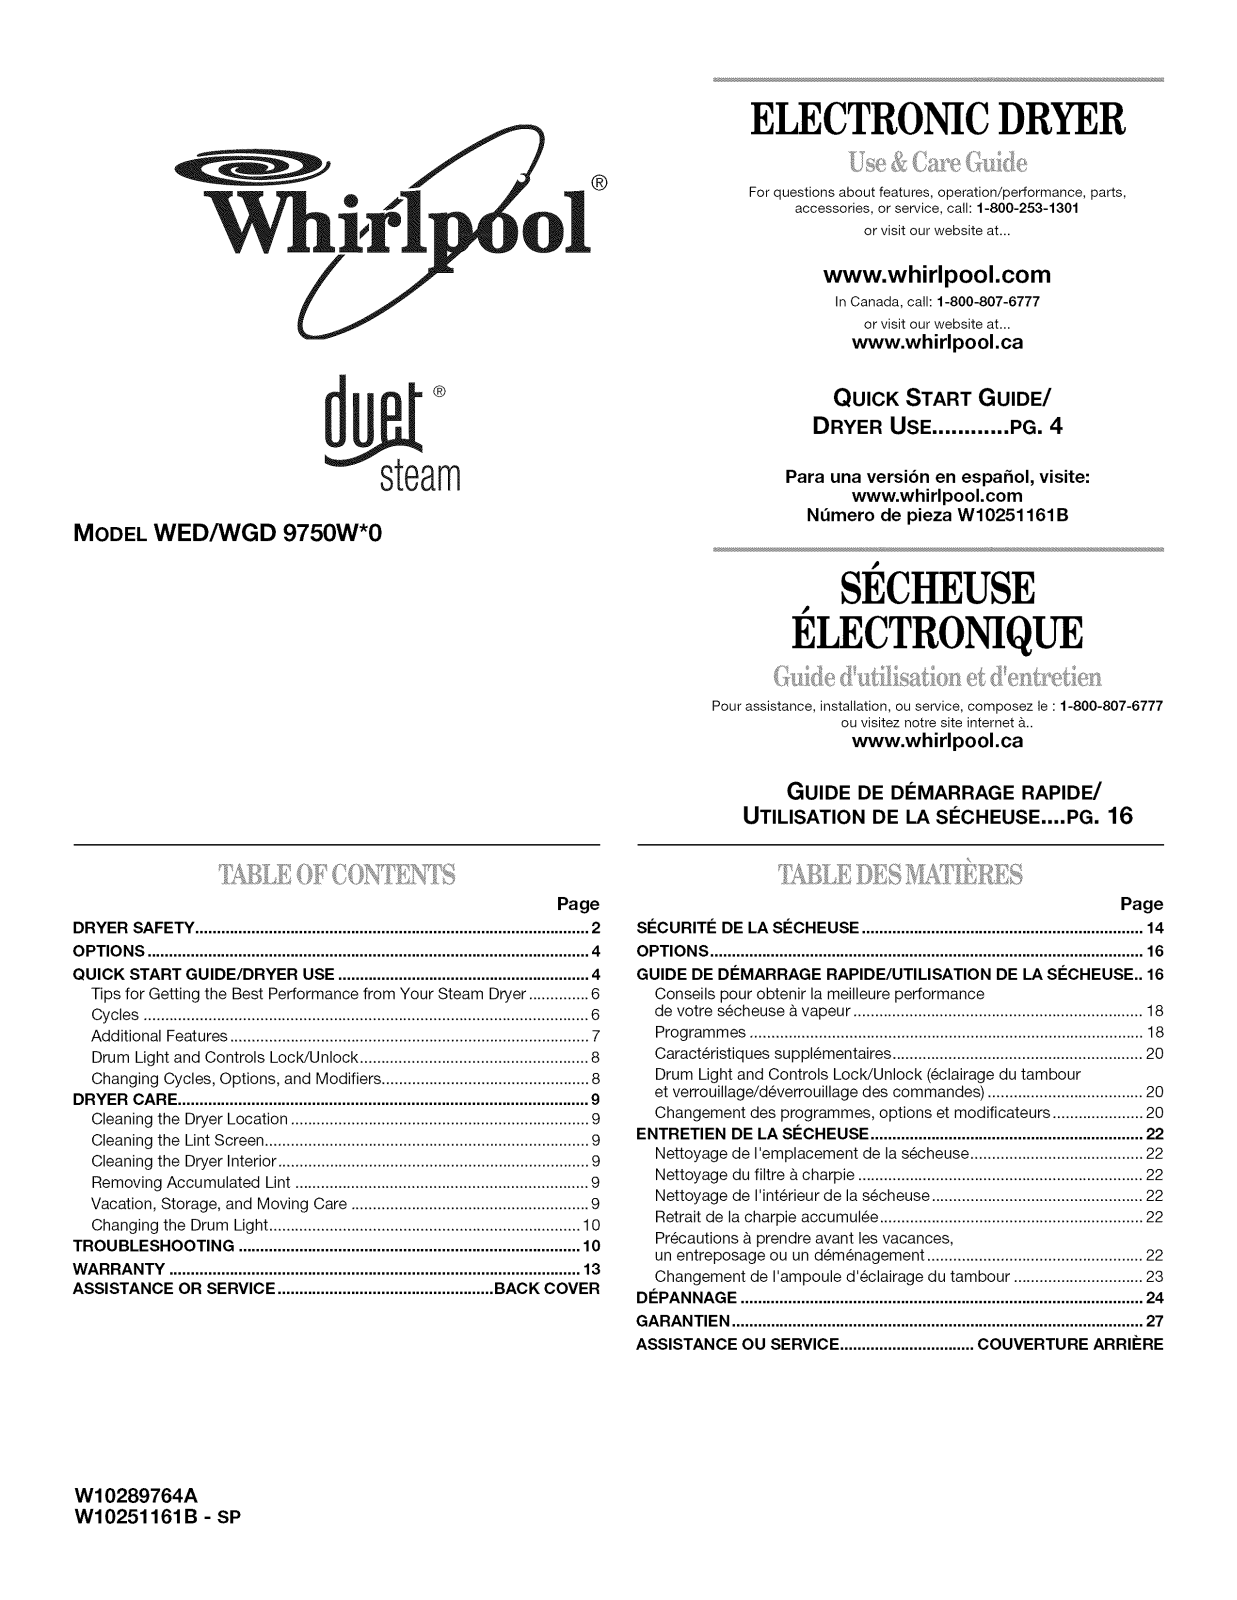 Whirlpool WED9750WW0, WGD9750WW1, WGD9750WW0, WGD9750WR1, WGD9750WR0 Owner’s Manual